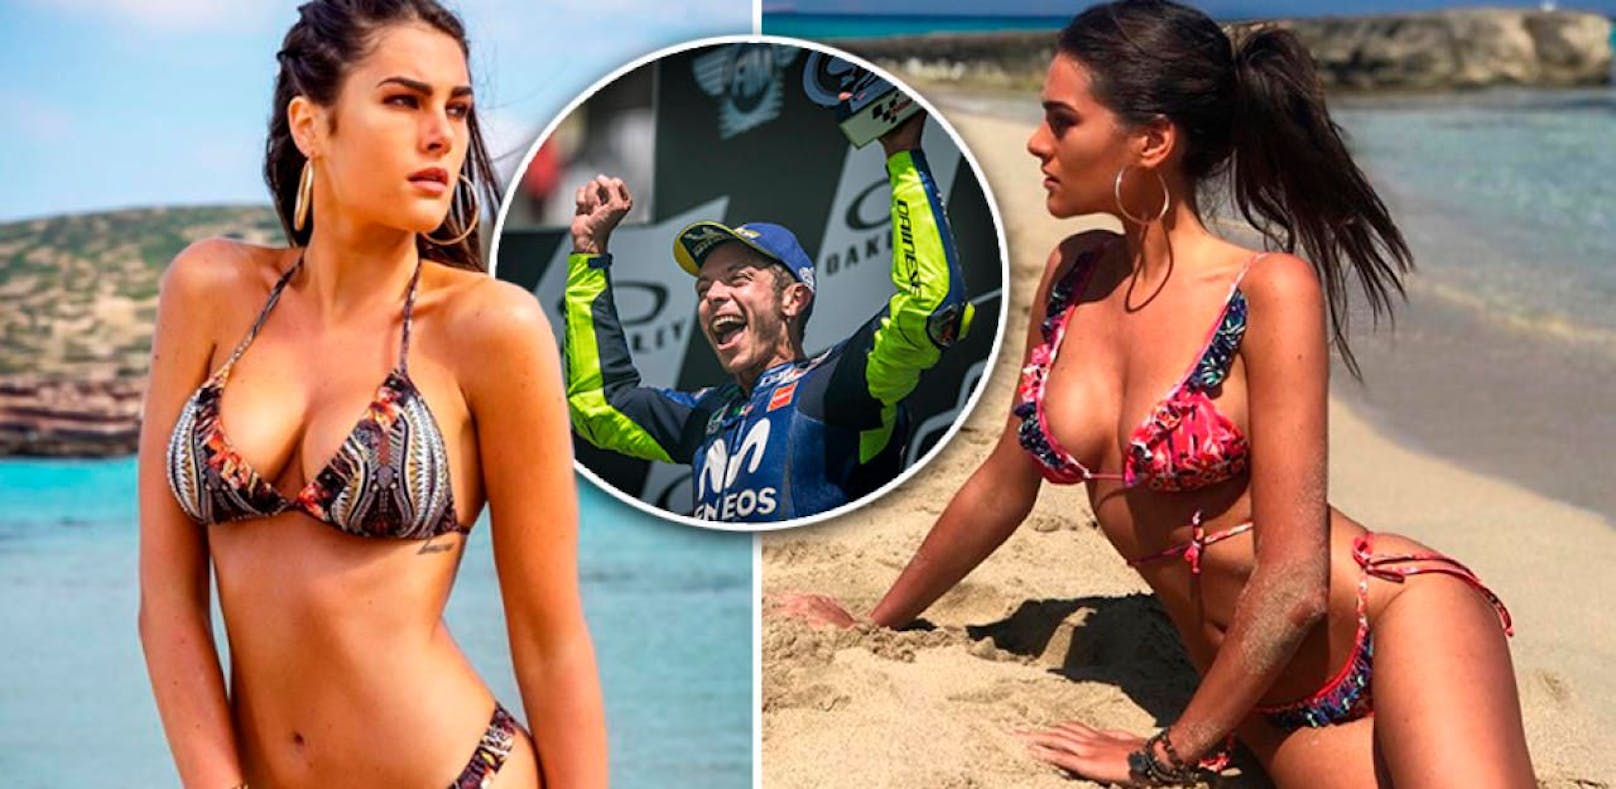 MotoGP-Star Rossi liebt heißes Unterwäsche-Model